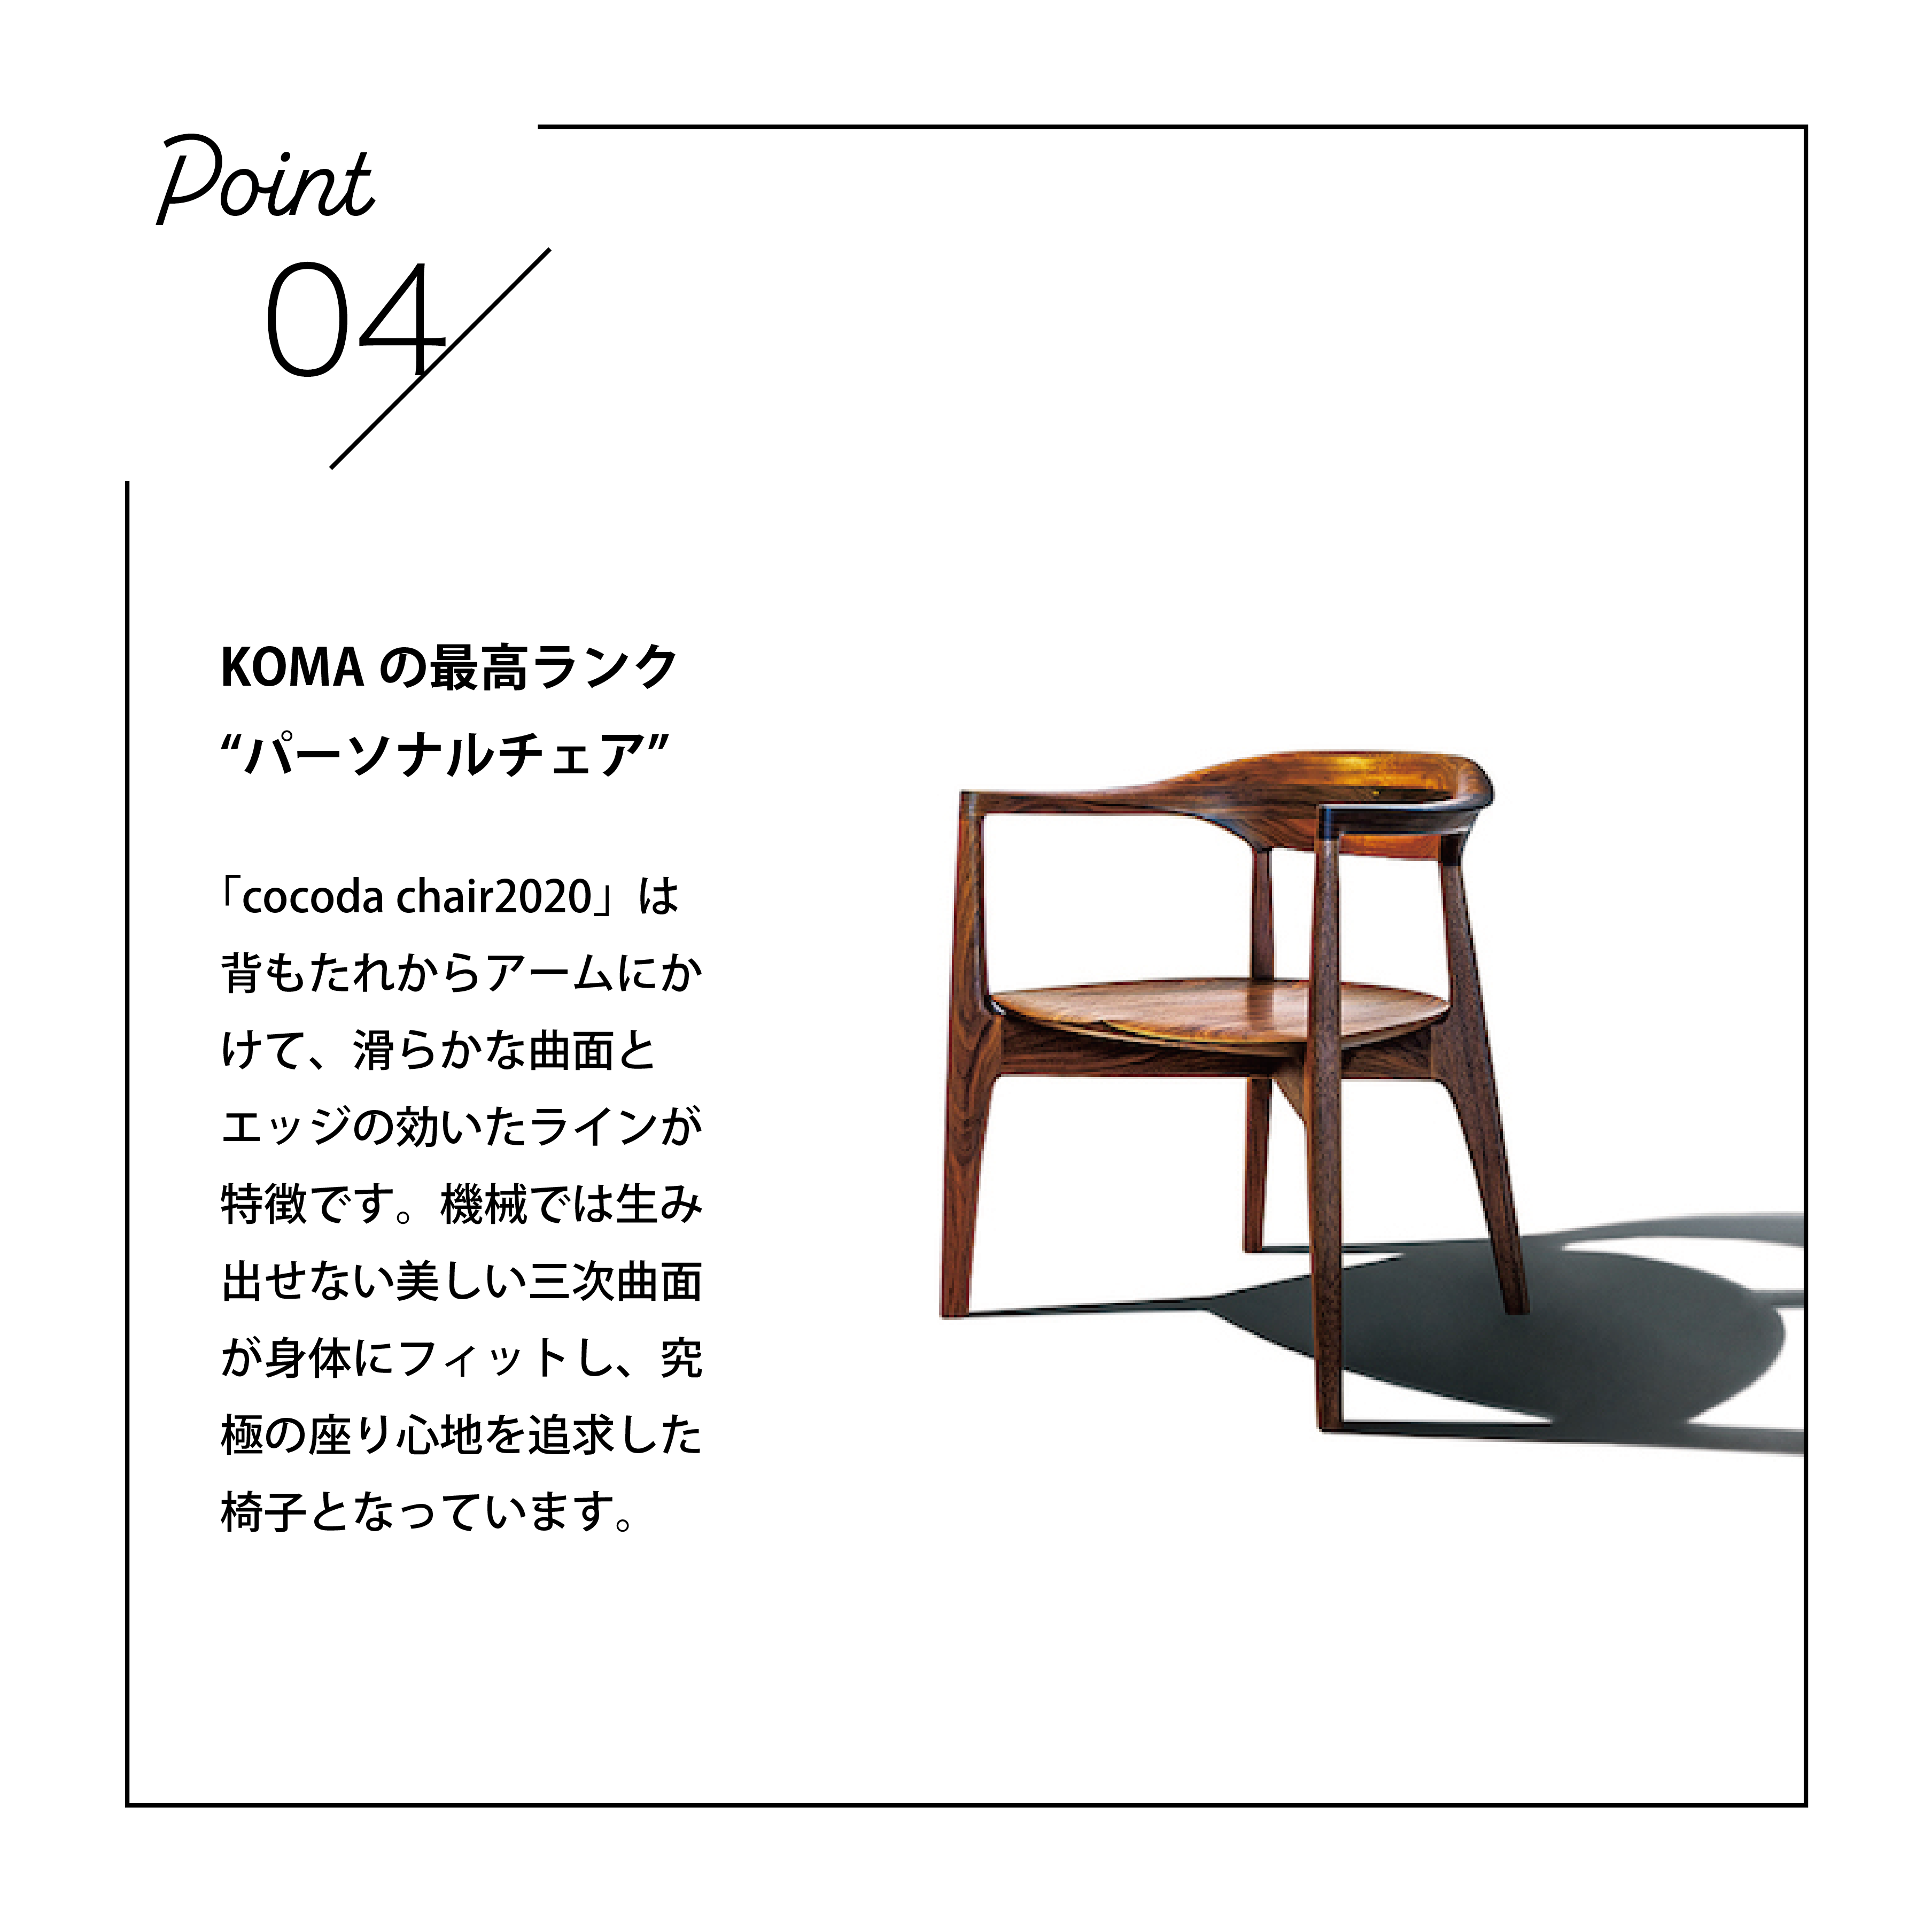 家具職人が惚れ込む美しさと色気を感じる椅子「KOMA」